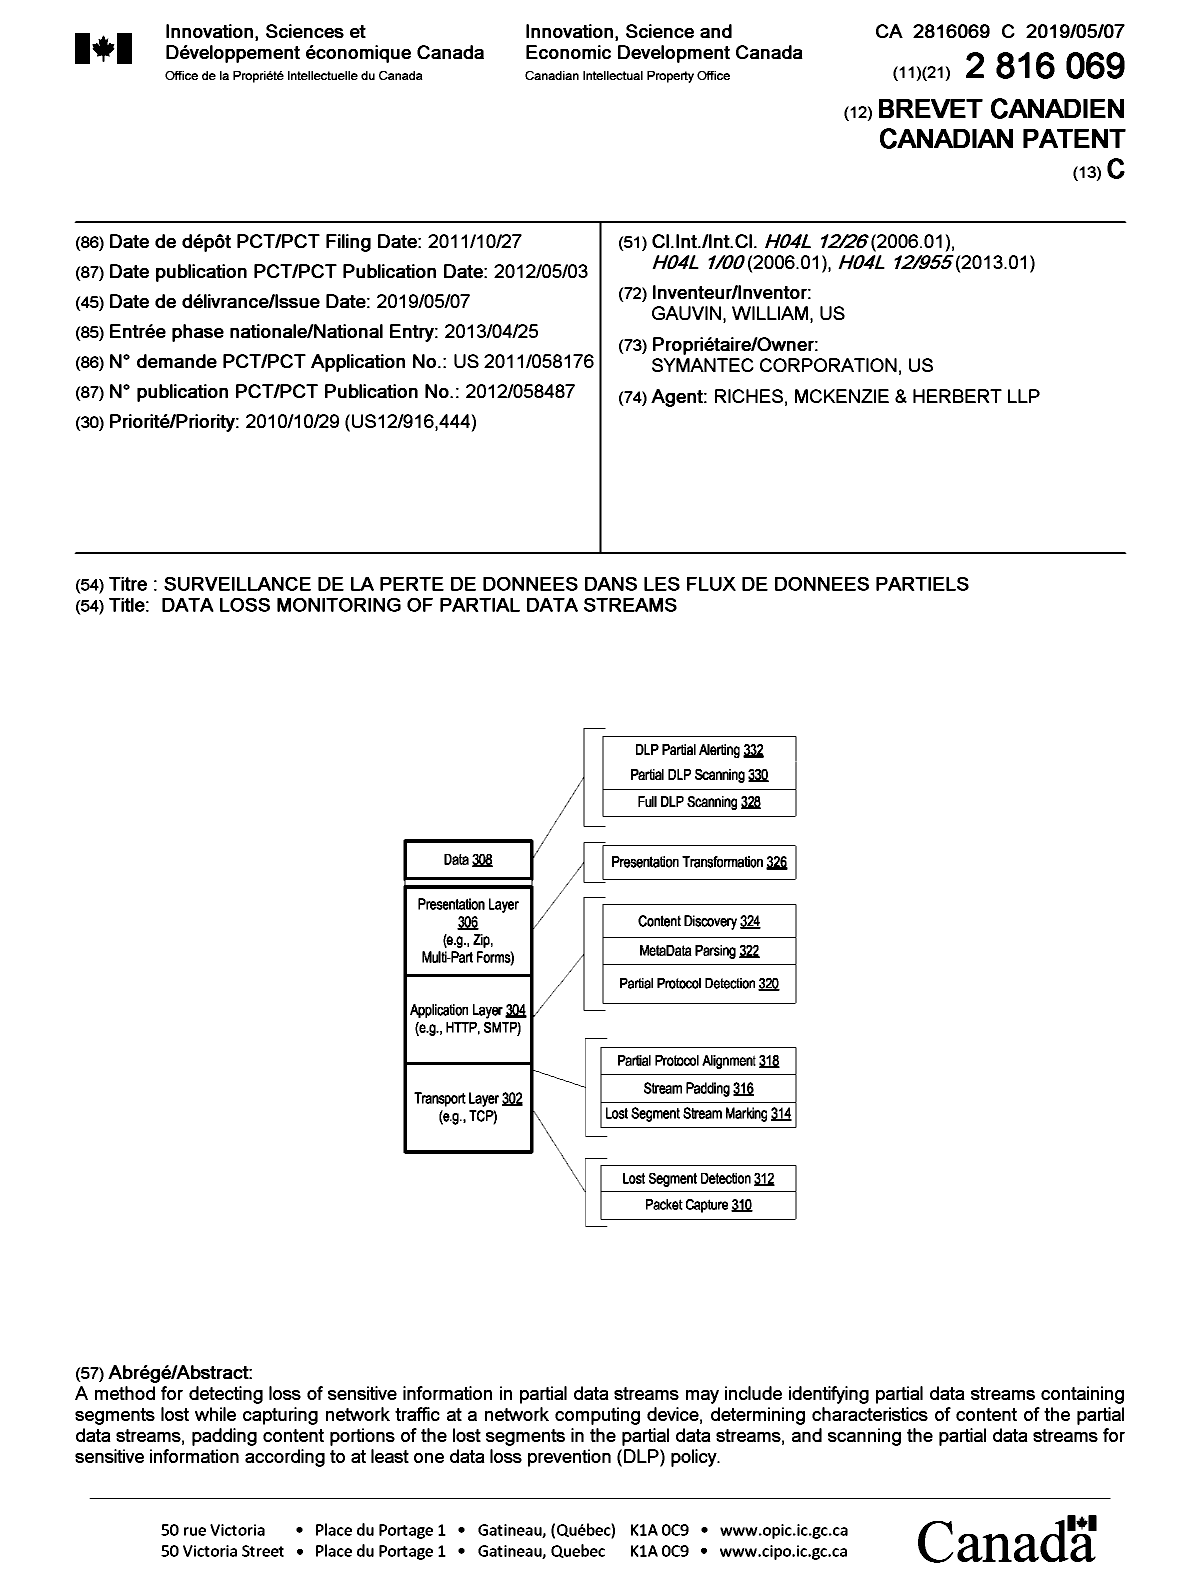 Document de brevet canadien 2816069. Page couverture 20190408. Image 1 de 1